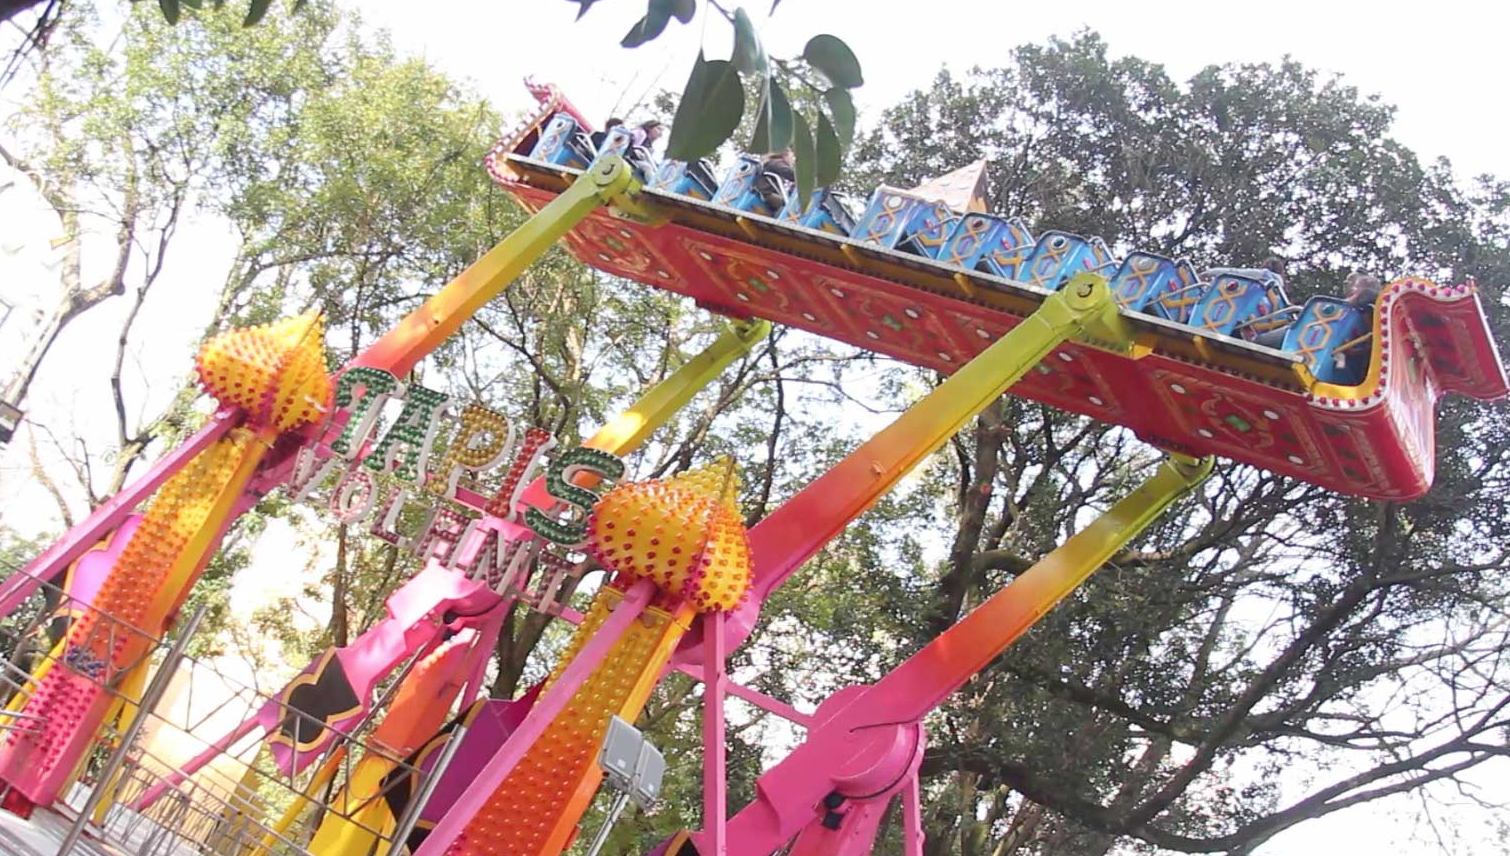  Crianças ficam presas a 6m de altura em brinquedo de parque de diversões 